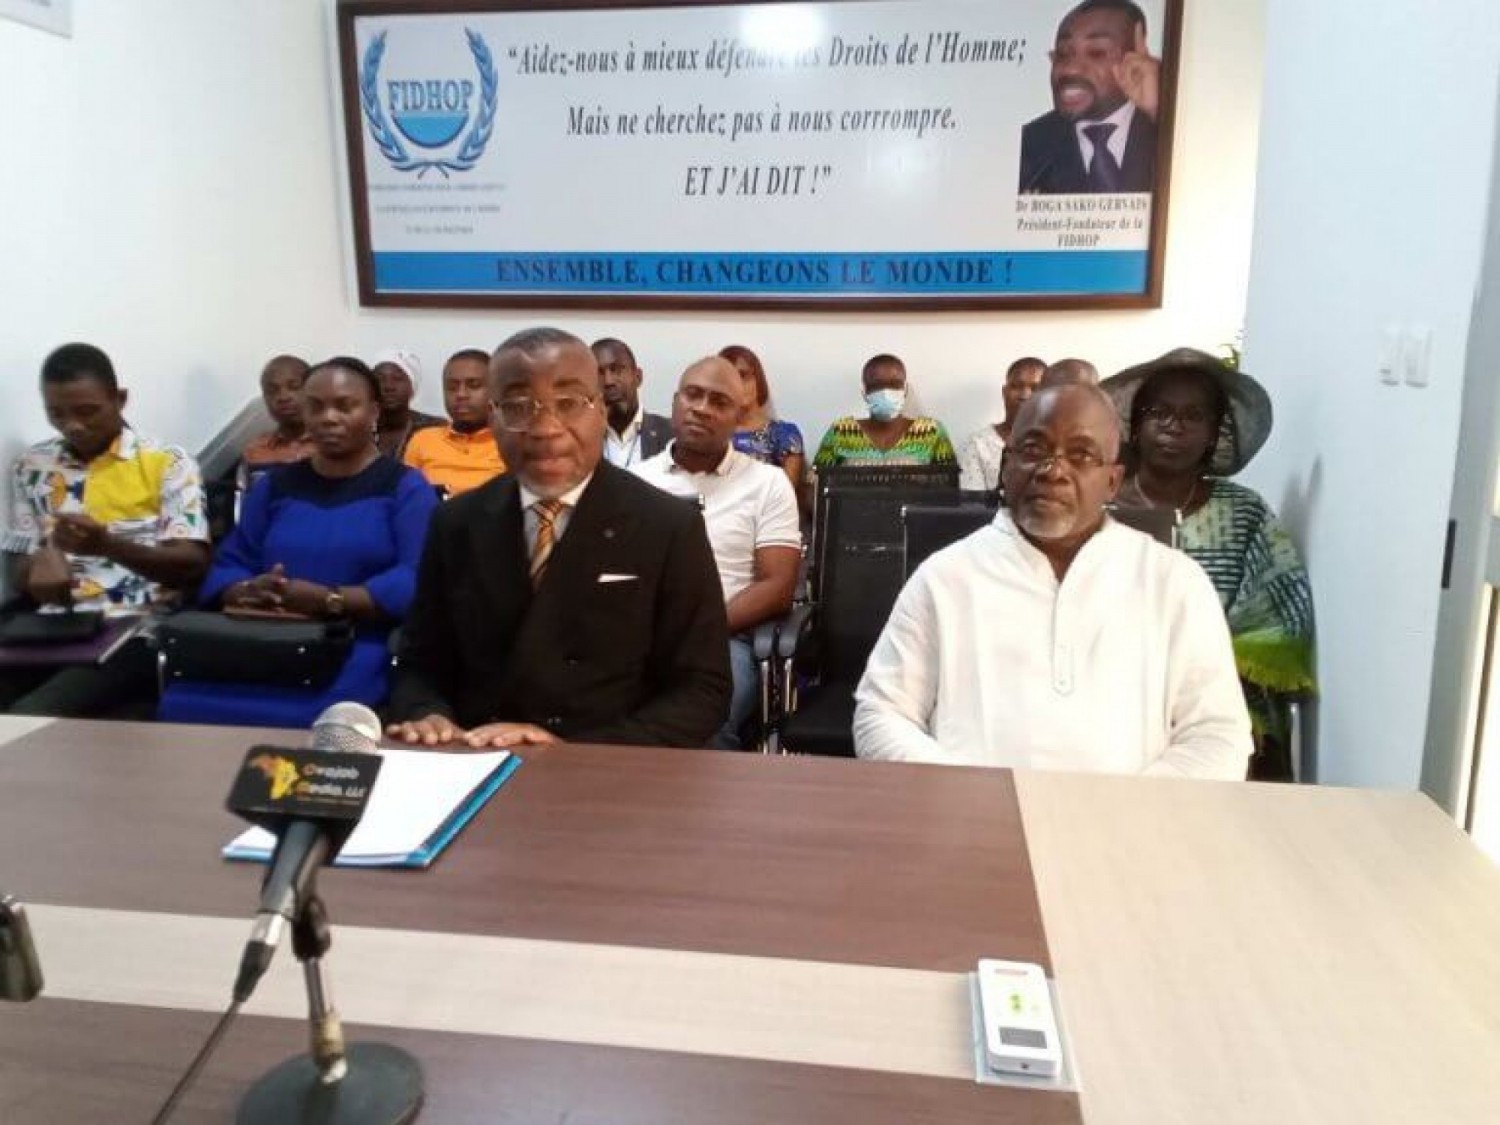 Côte d'Ivoire : Le président de la FIDHOP Gervais Boga Sako affirme qu'il est toujours sous contrôle judiciaire